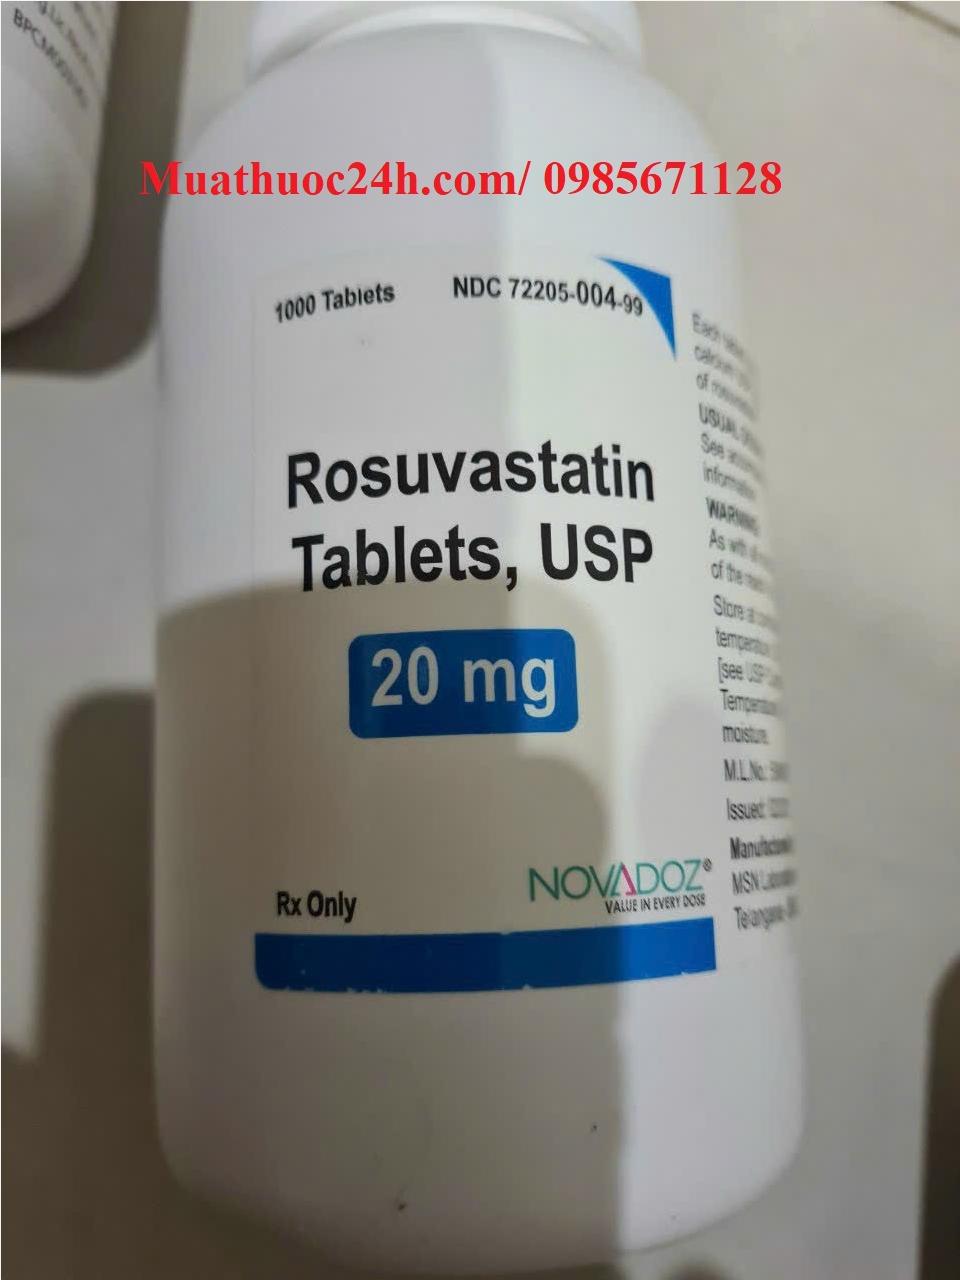 Thuốc Rosuvastatin 20mg Novadoz giá bao nhiêu mua ở đâu?